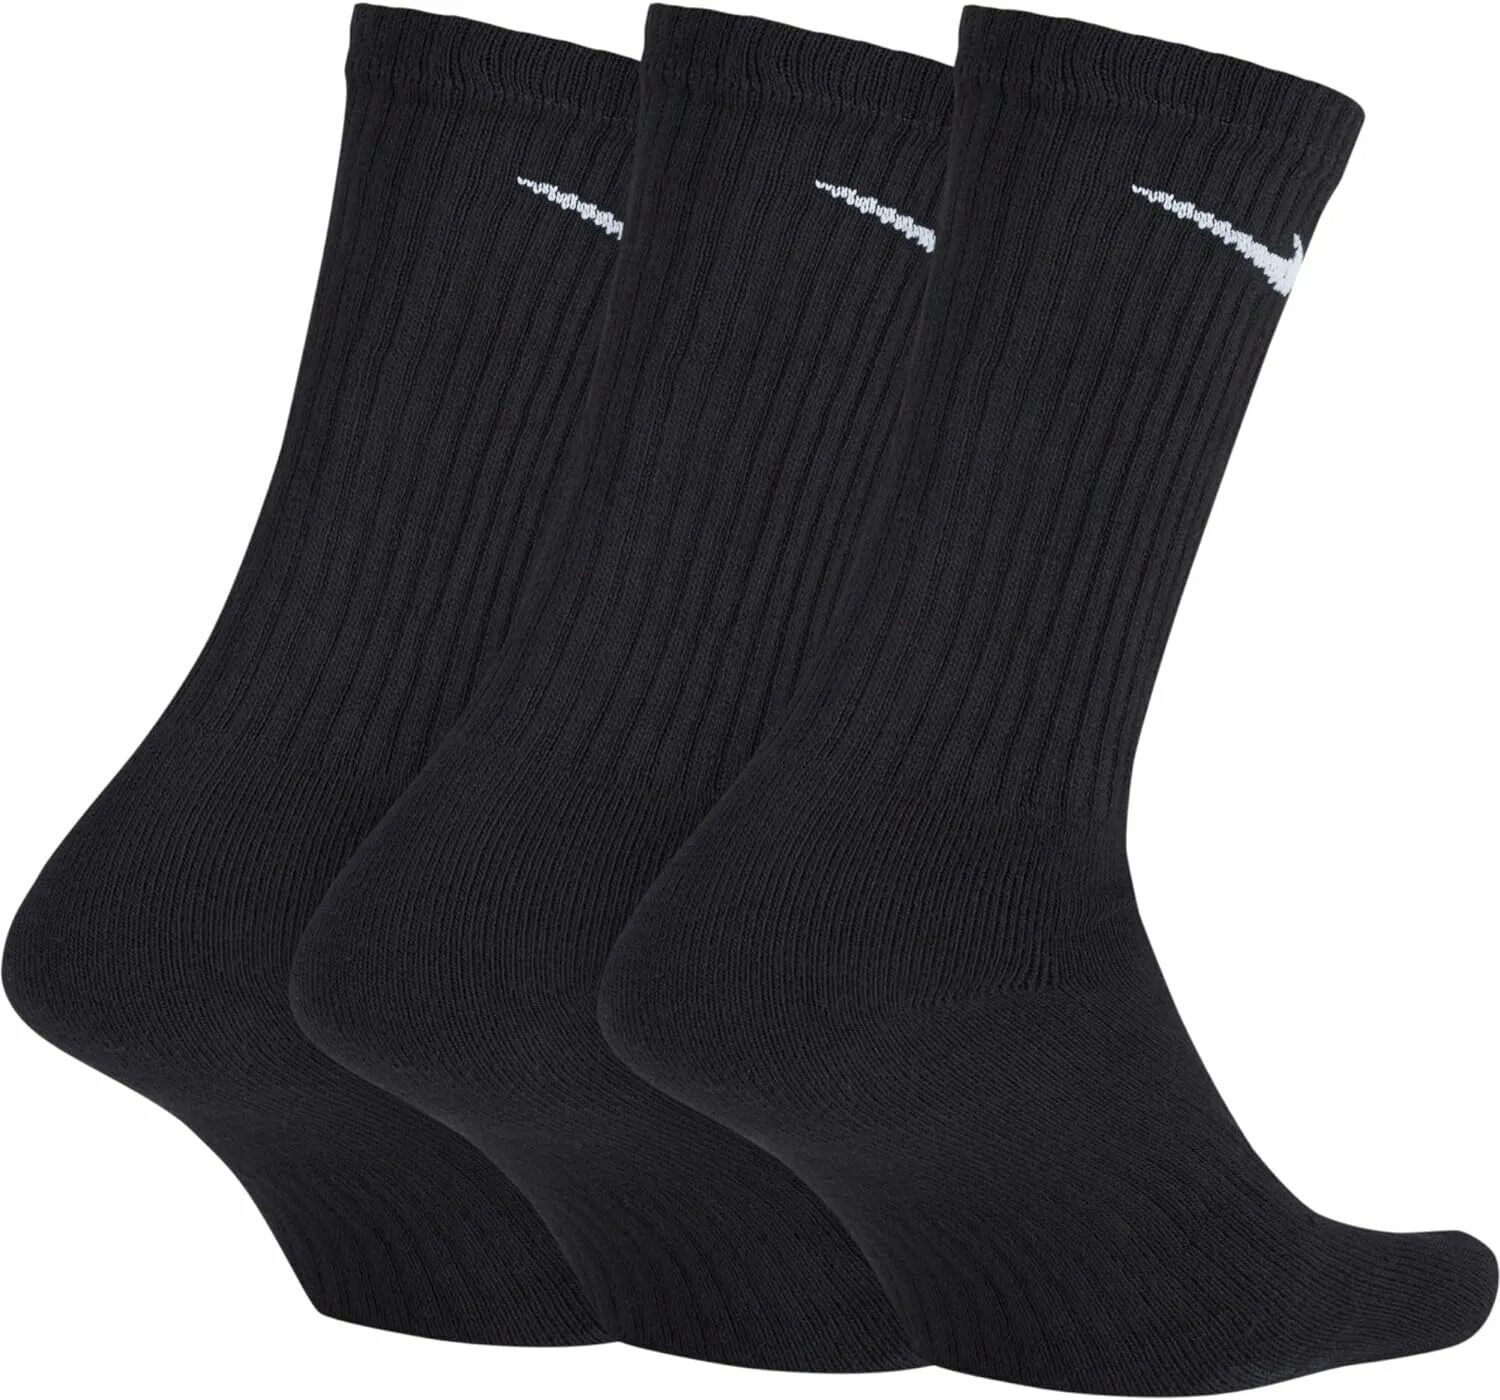 Черные носки найк. Носки Nike Cush Crew. Носки Nike черные высокие. Носки Nike everyday черные. Носки найк мужские черные.